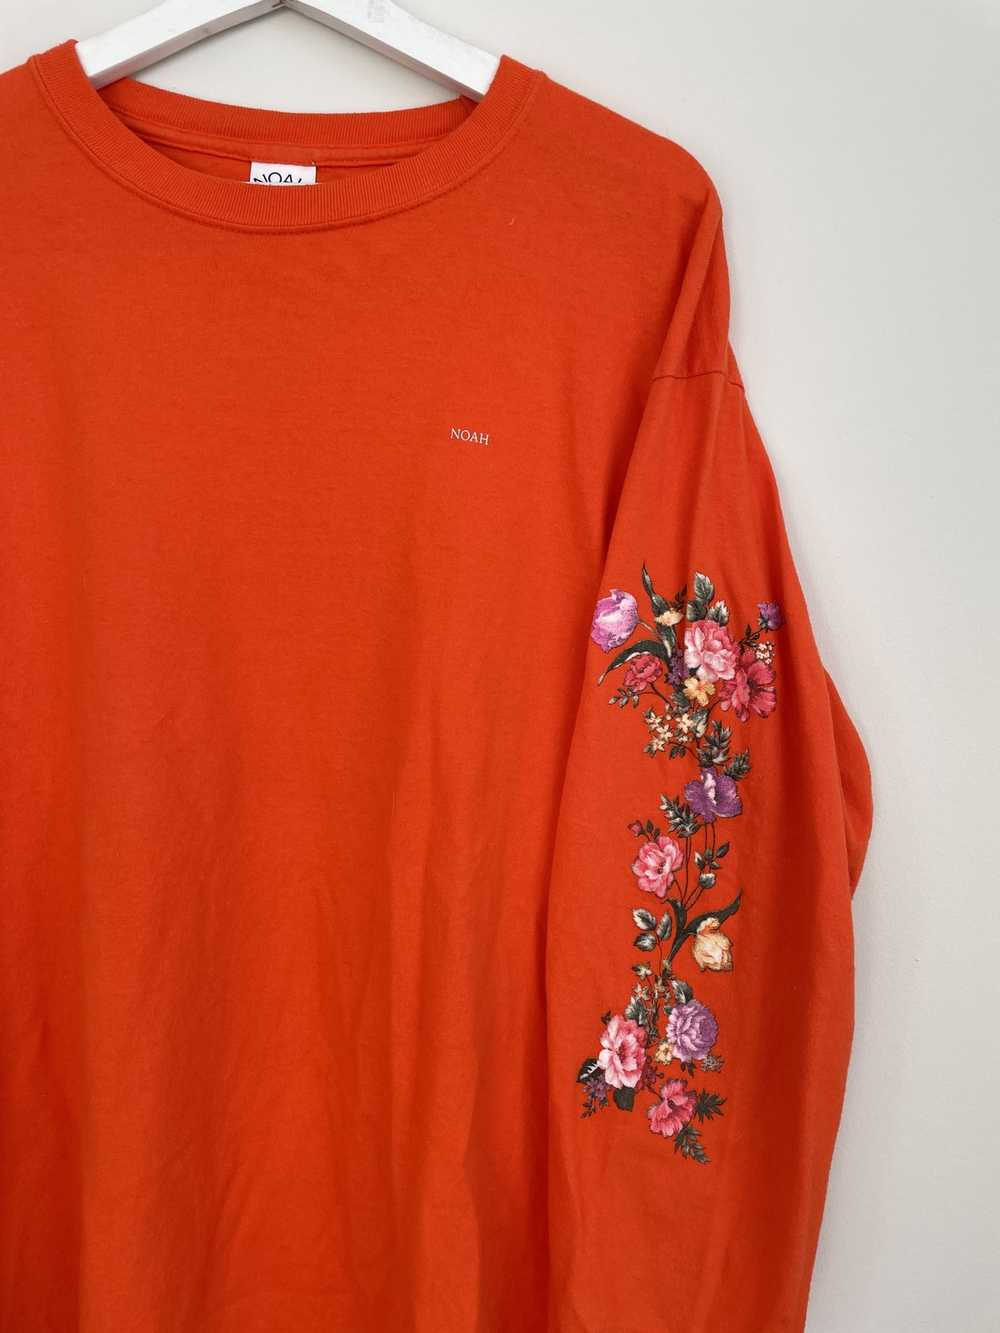 Noah Noah flowers LS t shirt orange floral - image 2